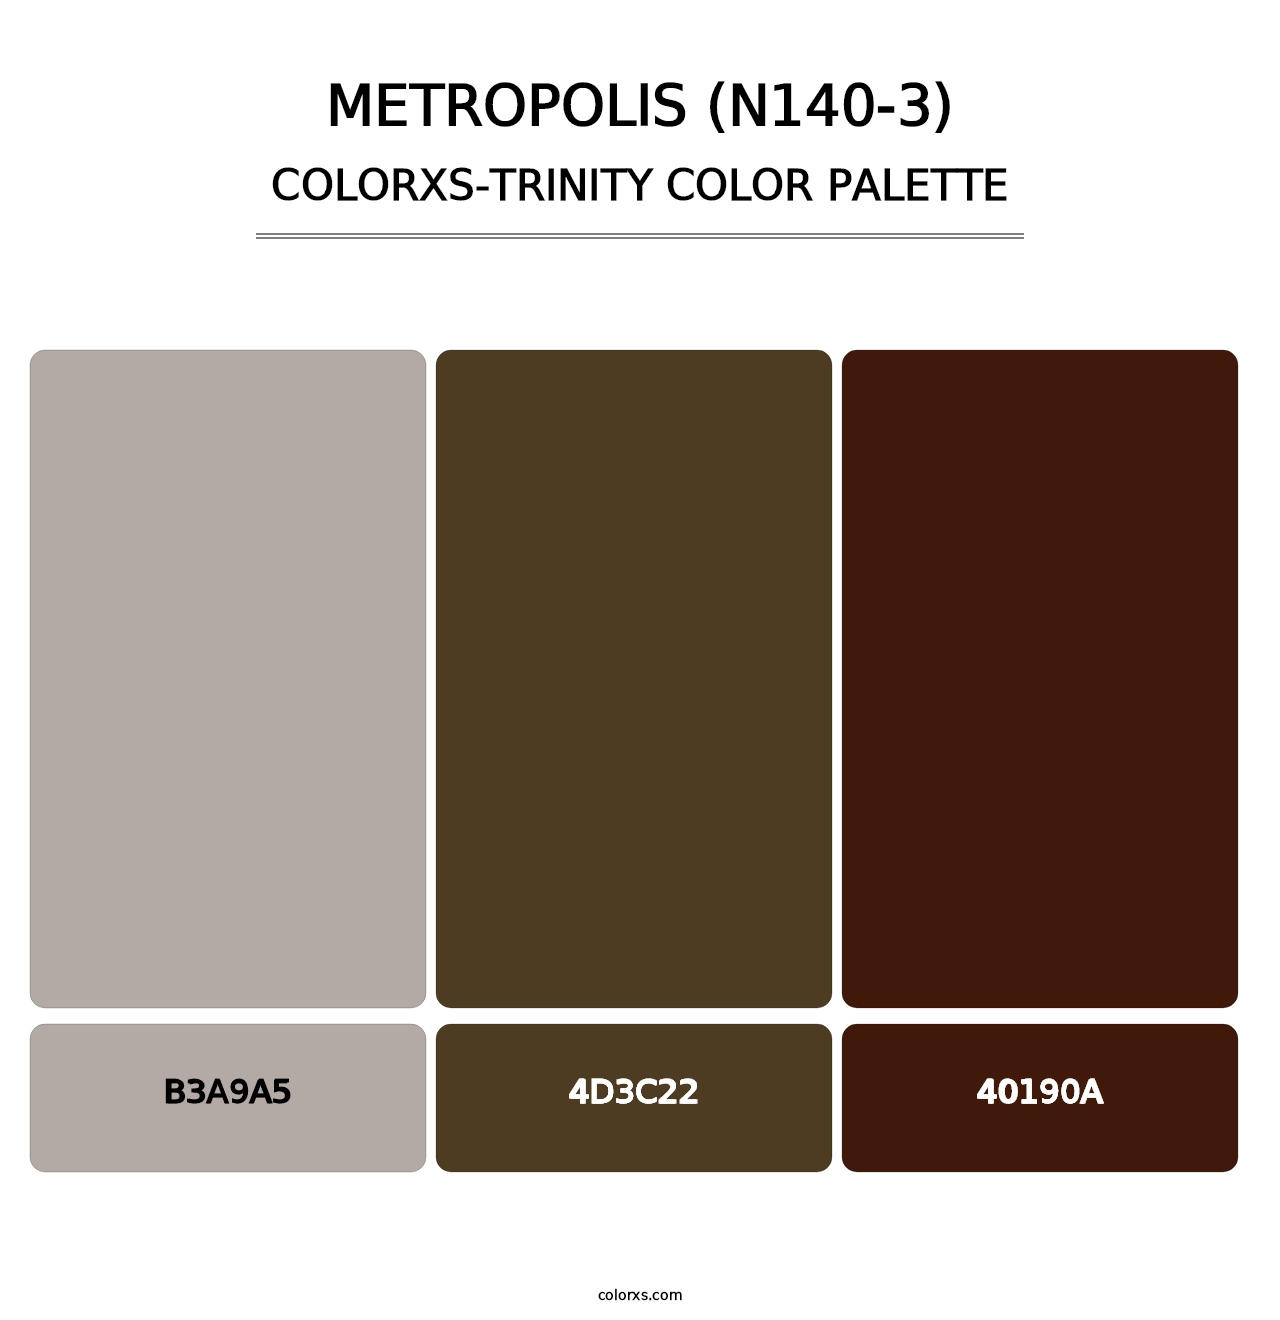 Metropolis (N140-3) - Colorxs Trinity Palette